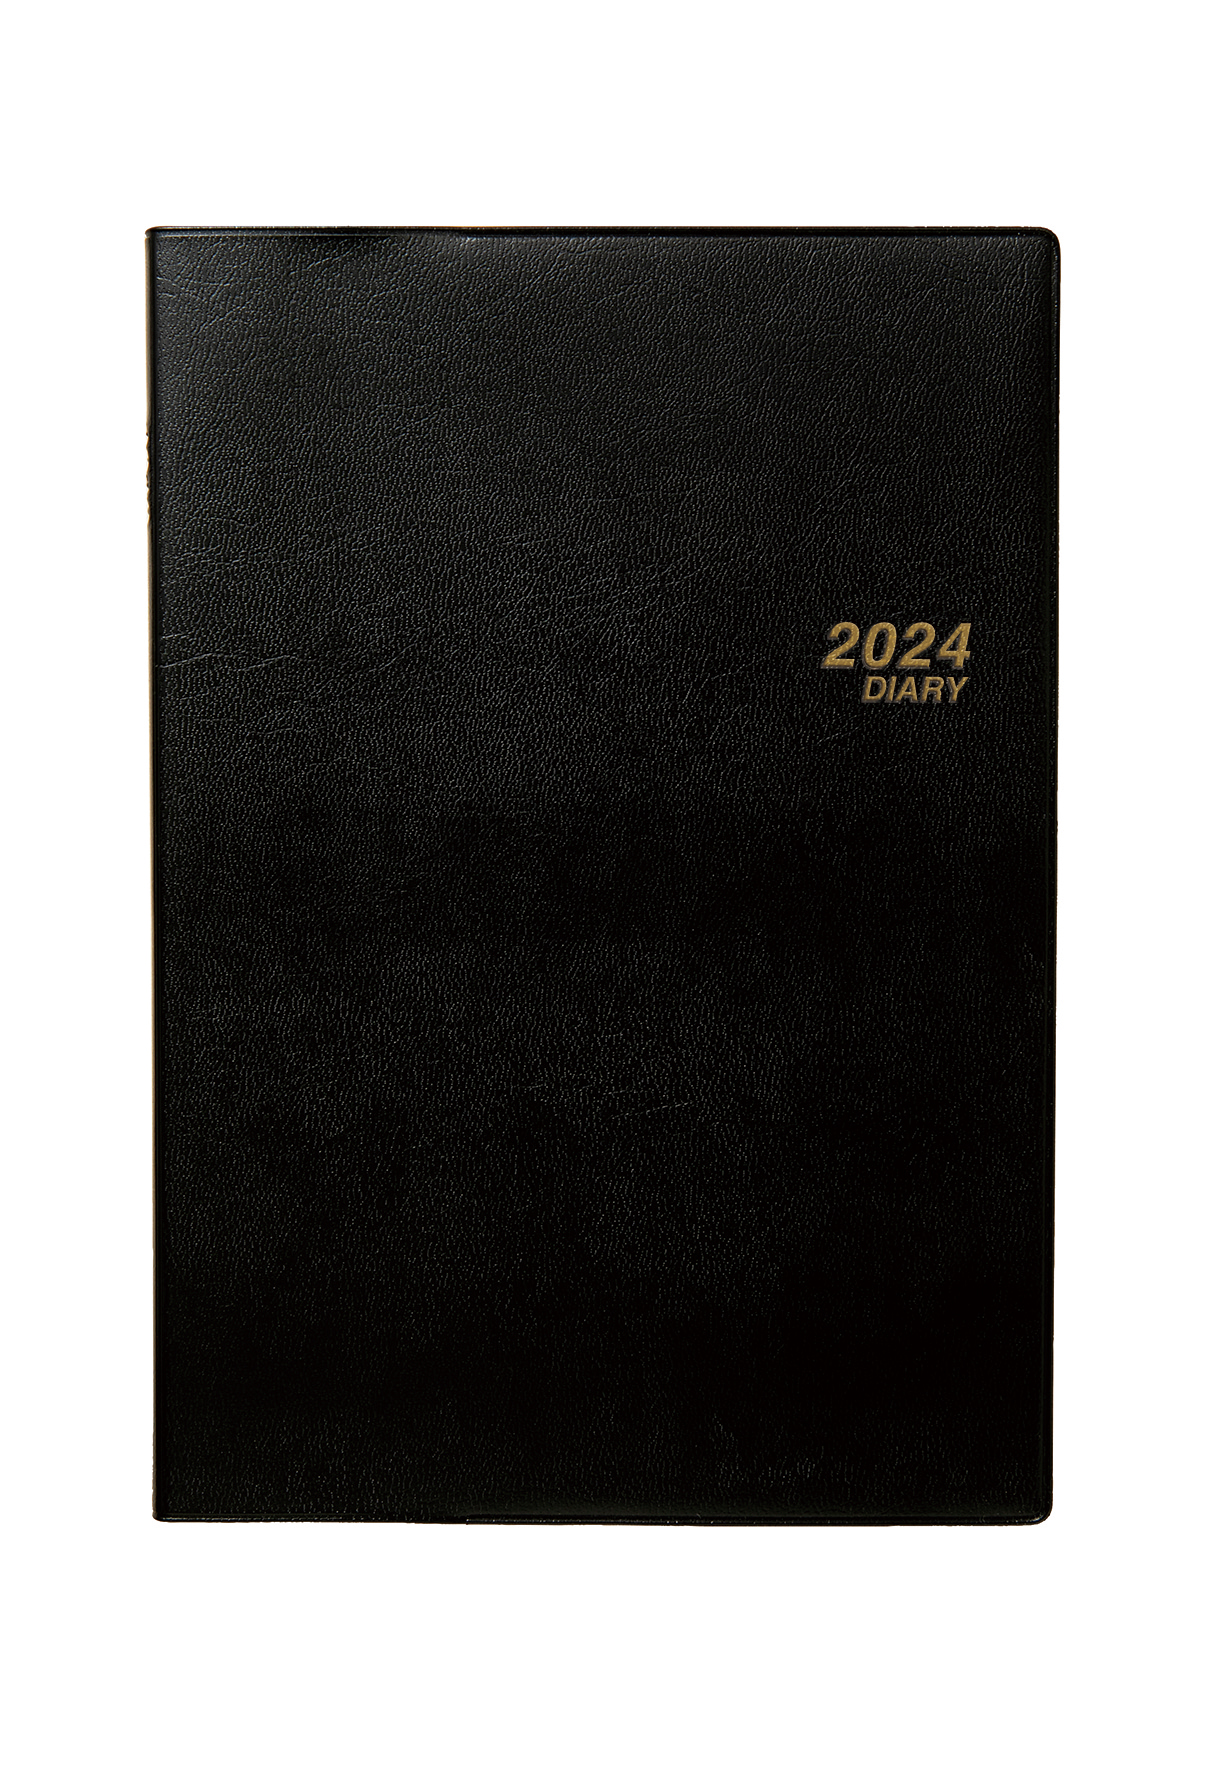 3211　SANNOビッグメモ・A5判（黒）